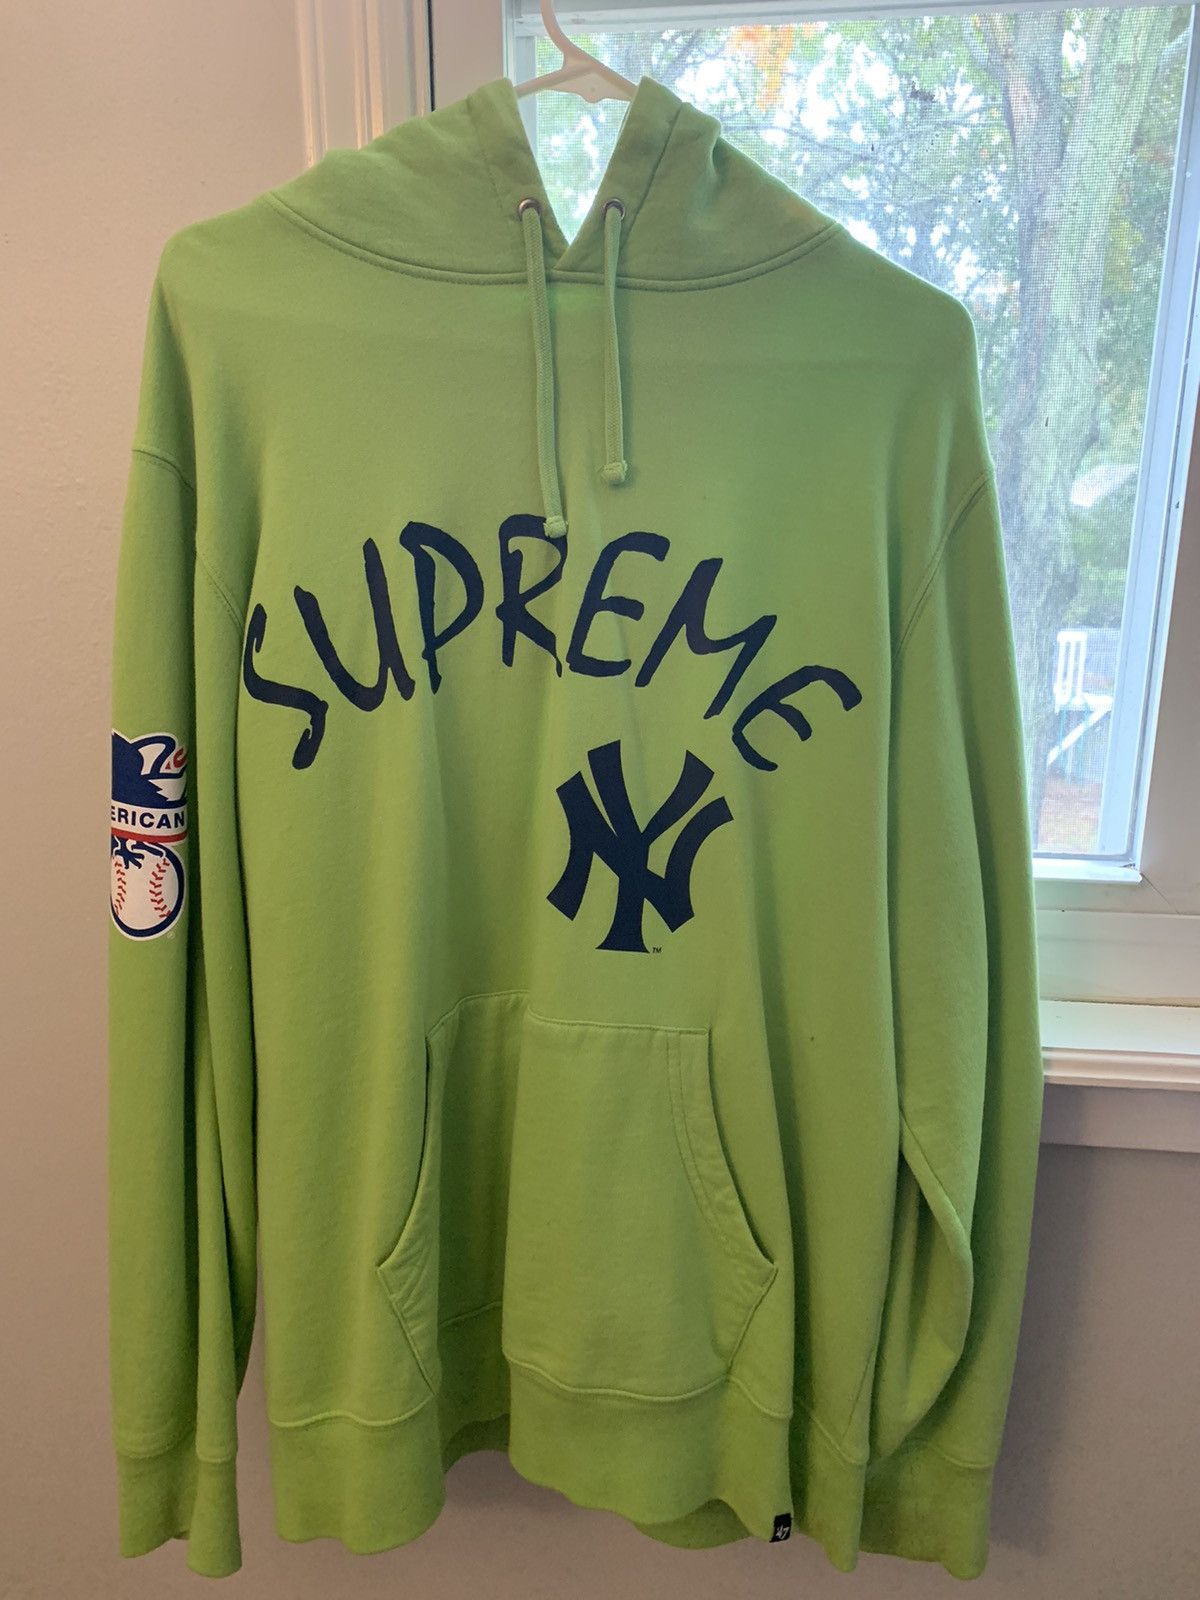 Supreme 2015 x Yankees Hoodie - Blue Sweatshirts & Hoodies, Clothing -  WSPME58209